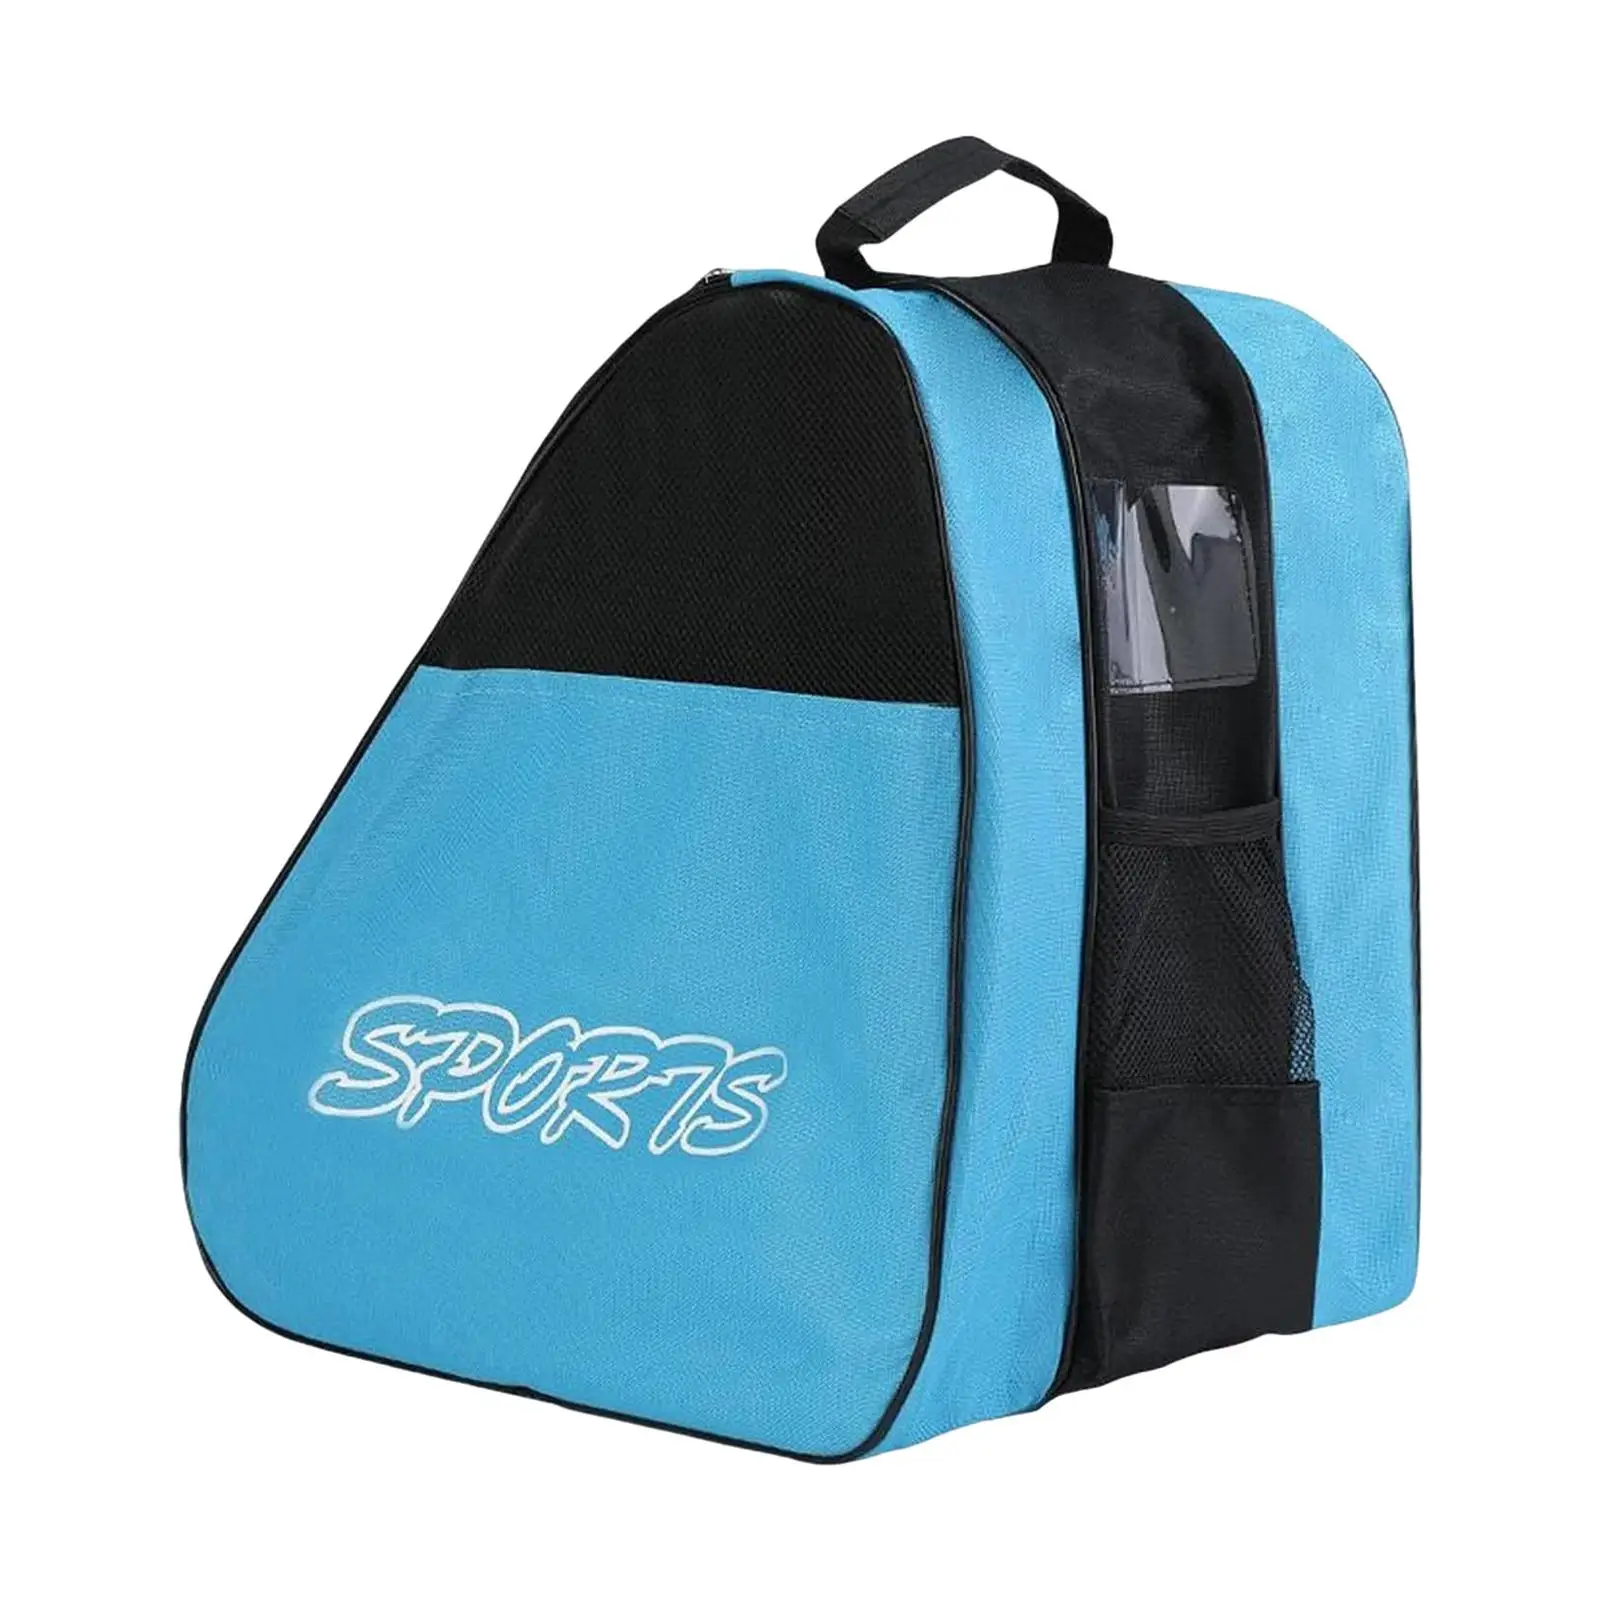 Roller Skate Bag Skate Accessories Adjustable Shoulder Strap Ice Skate Bag